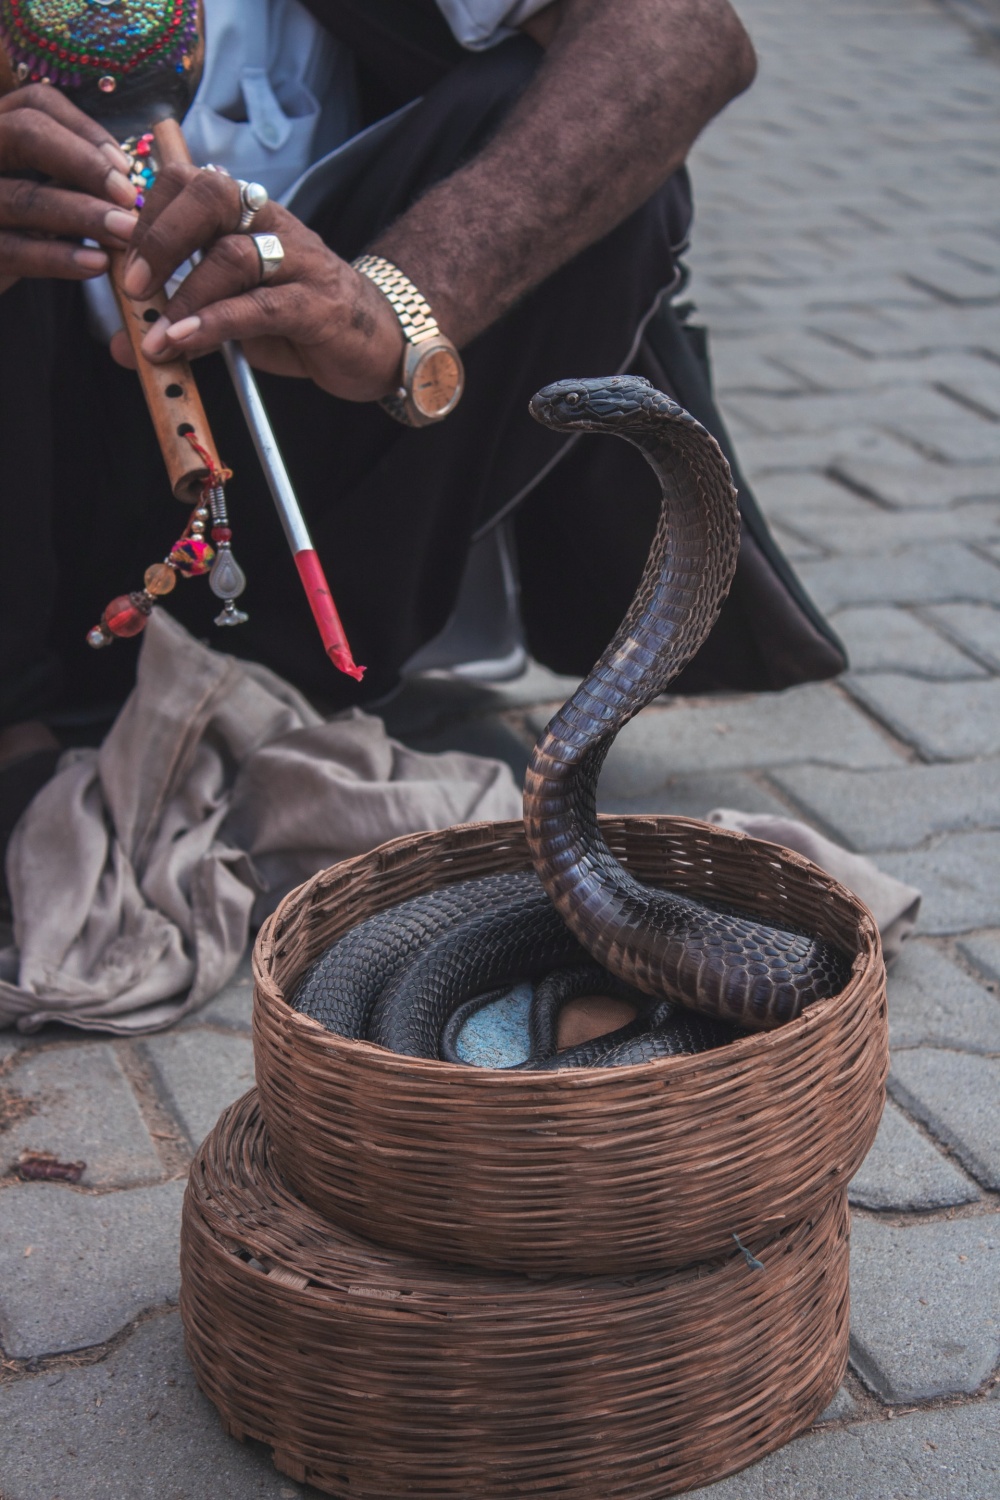 Snake Charmer Dies From Venomous Cobra Bite in Mouth and Finger